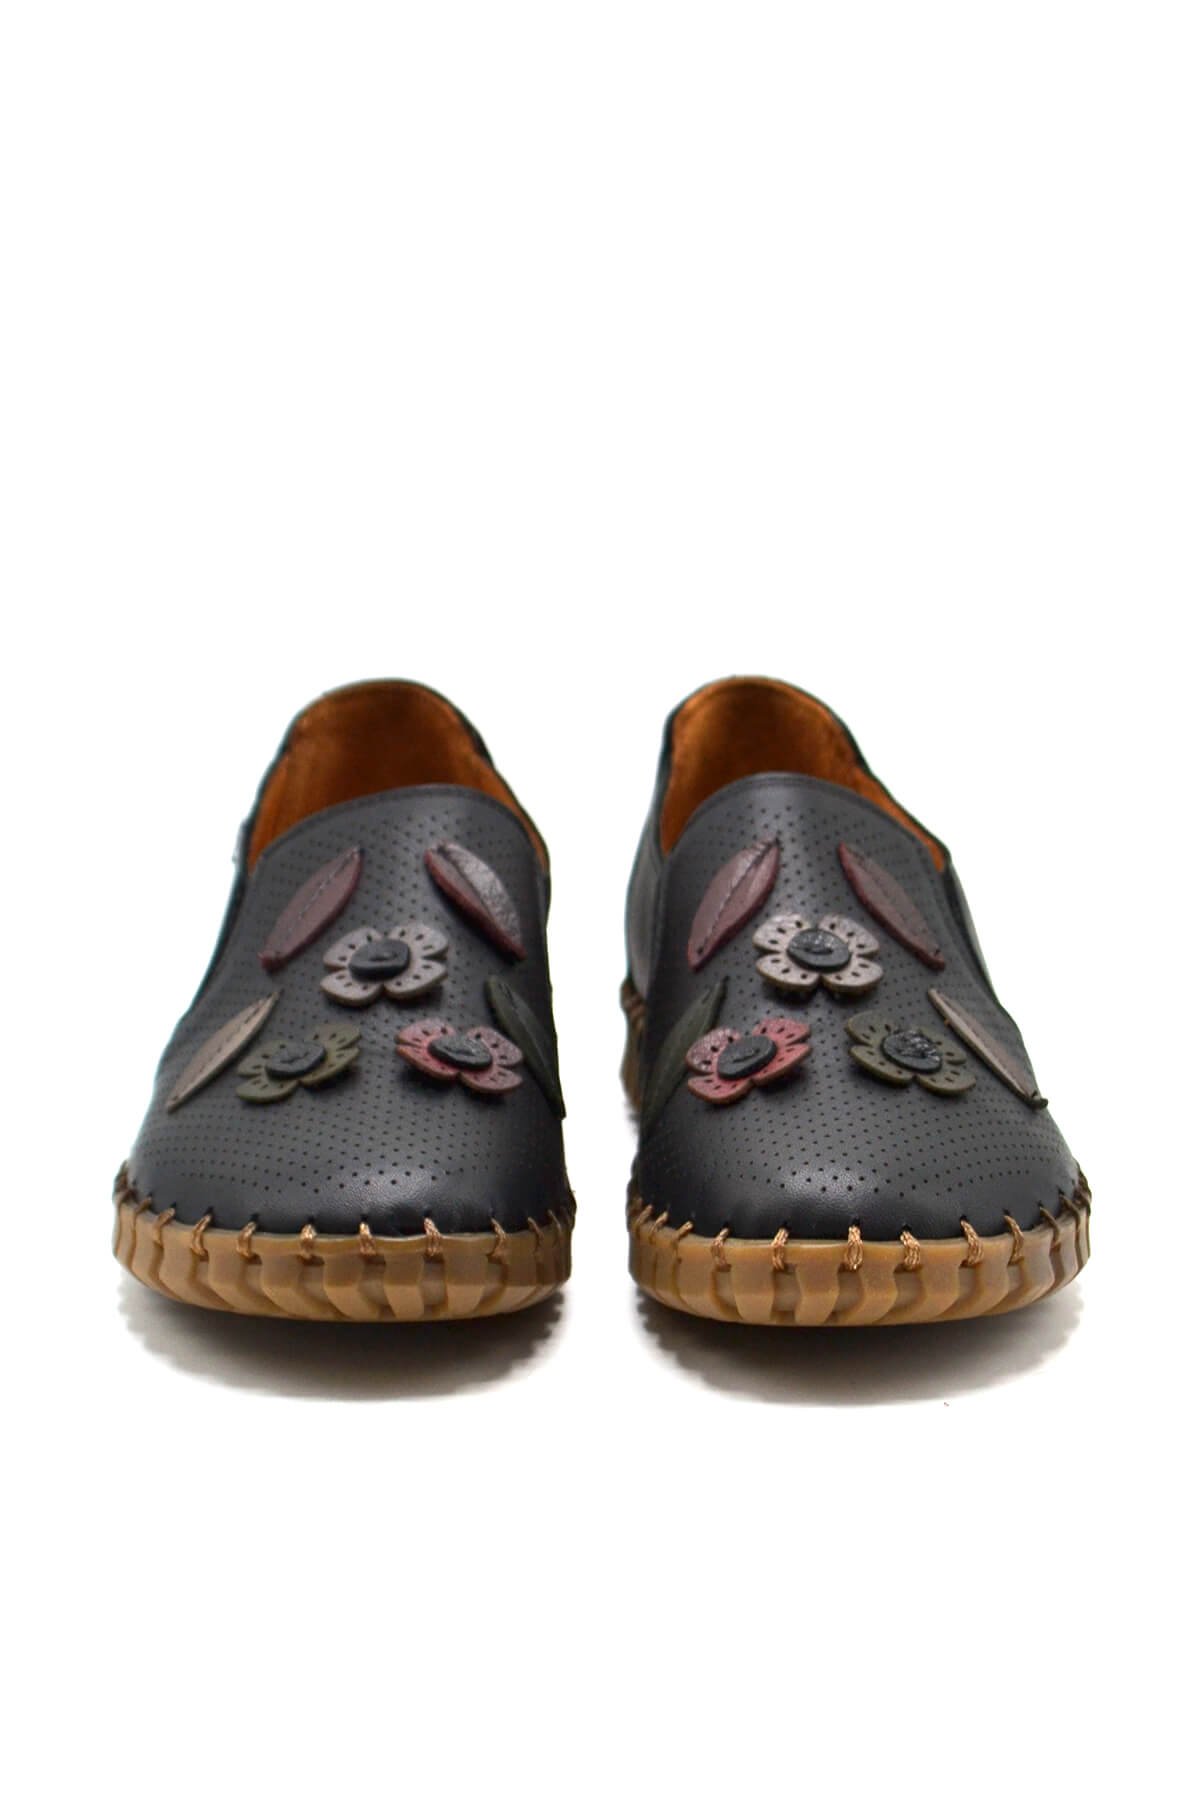 Kadın Comfort Deri Ayakkabı Siyah 2010719Y - Thumbnail